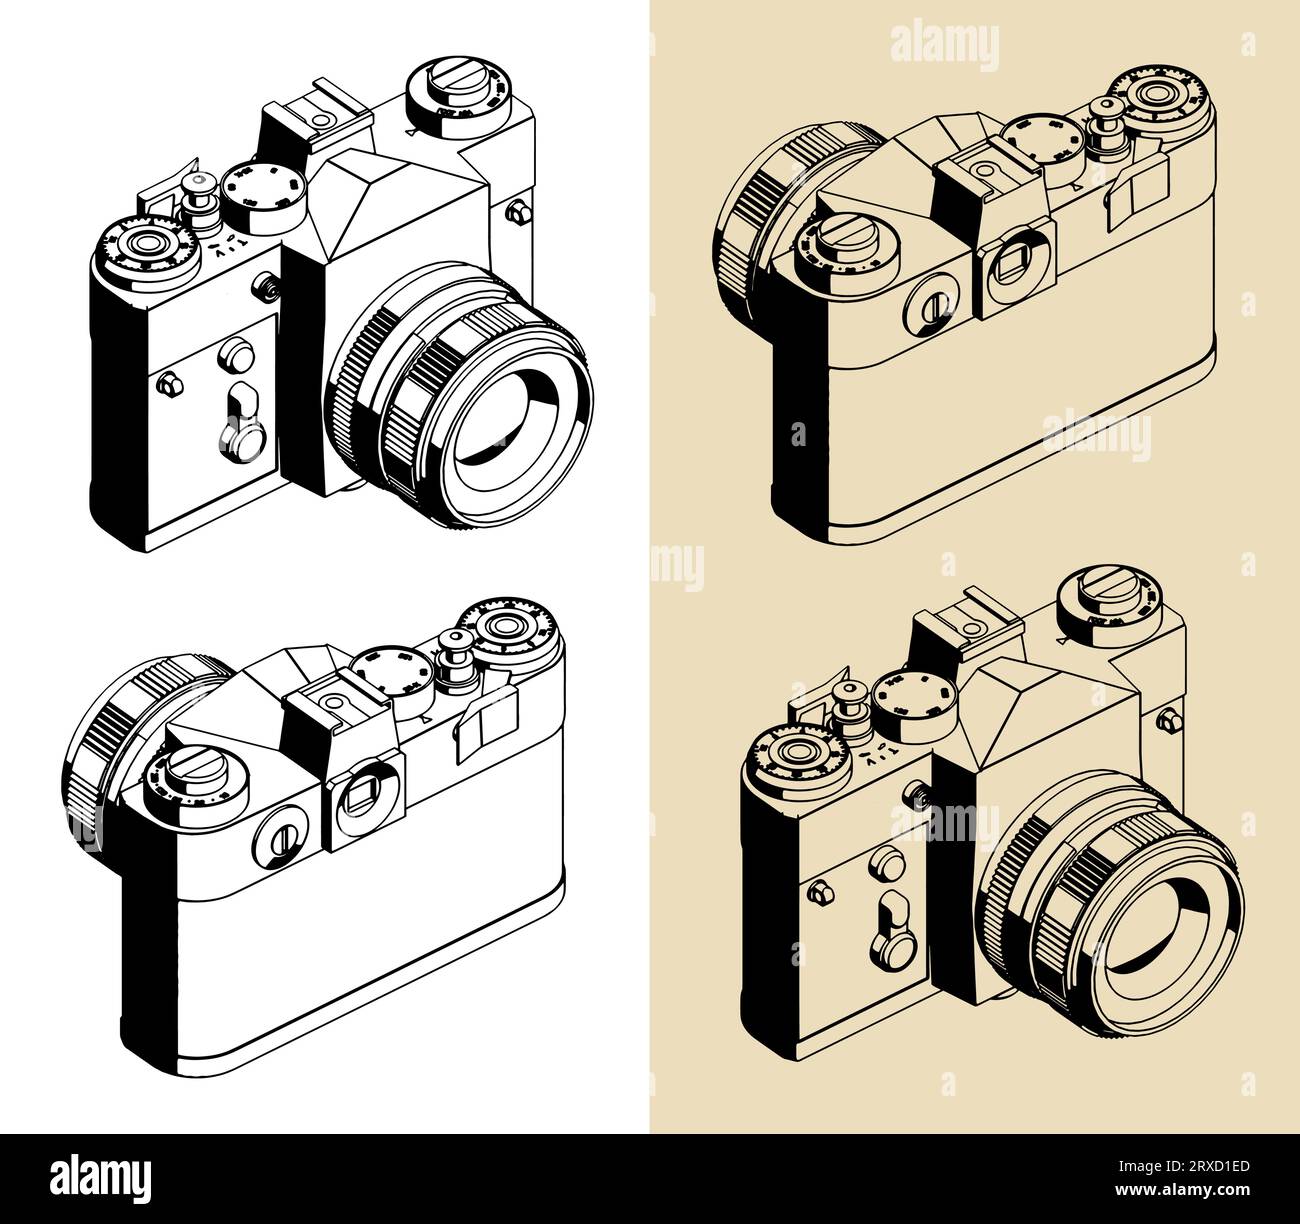 Illustrations isométriques vectorielles stylisées d'un appareil photo reflex rétro Illustration de Vecteur